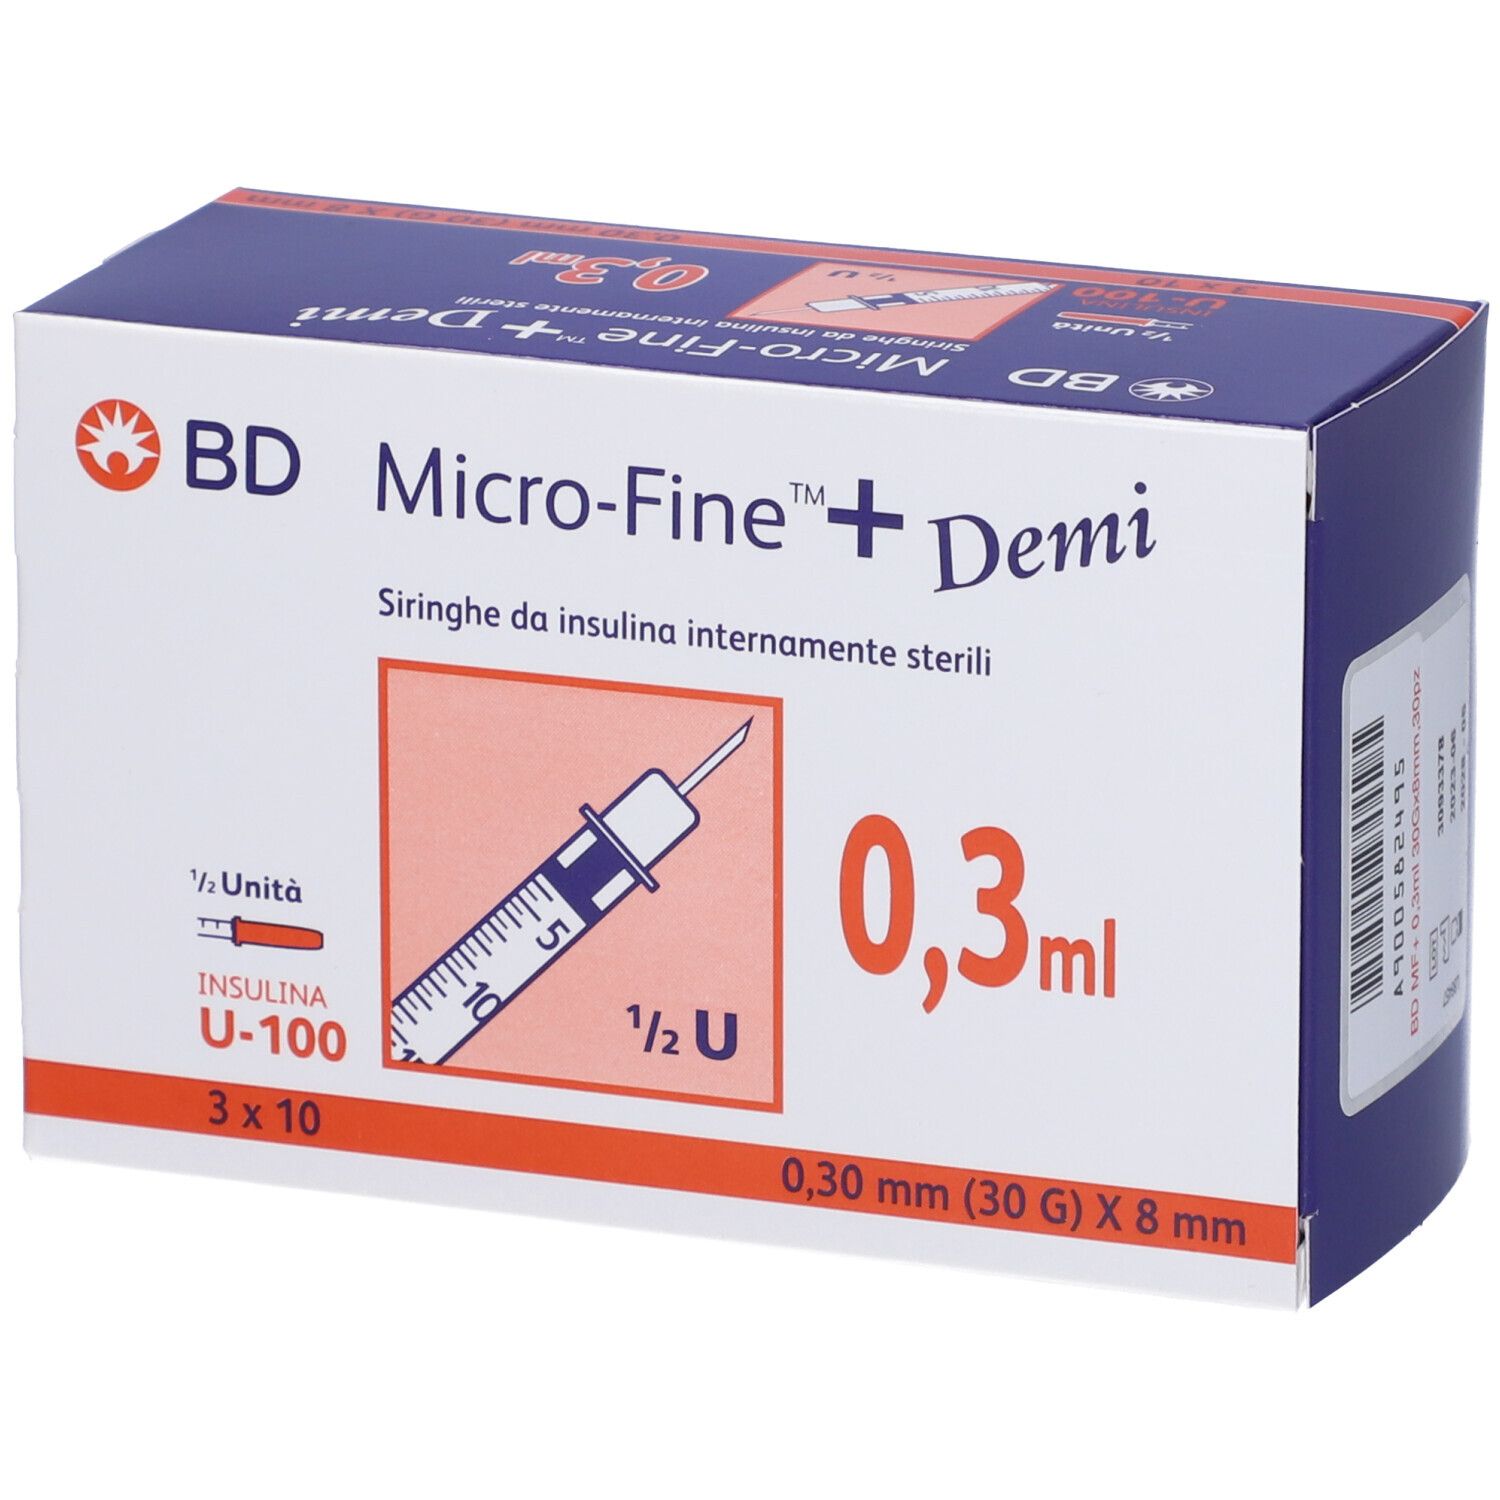 Image of BD Micro-Fine™+ Siringhe 0.3 ml 0.30 mm (30G) x 8 mm Demì